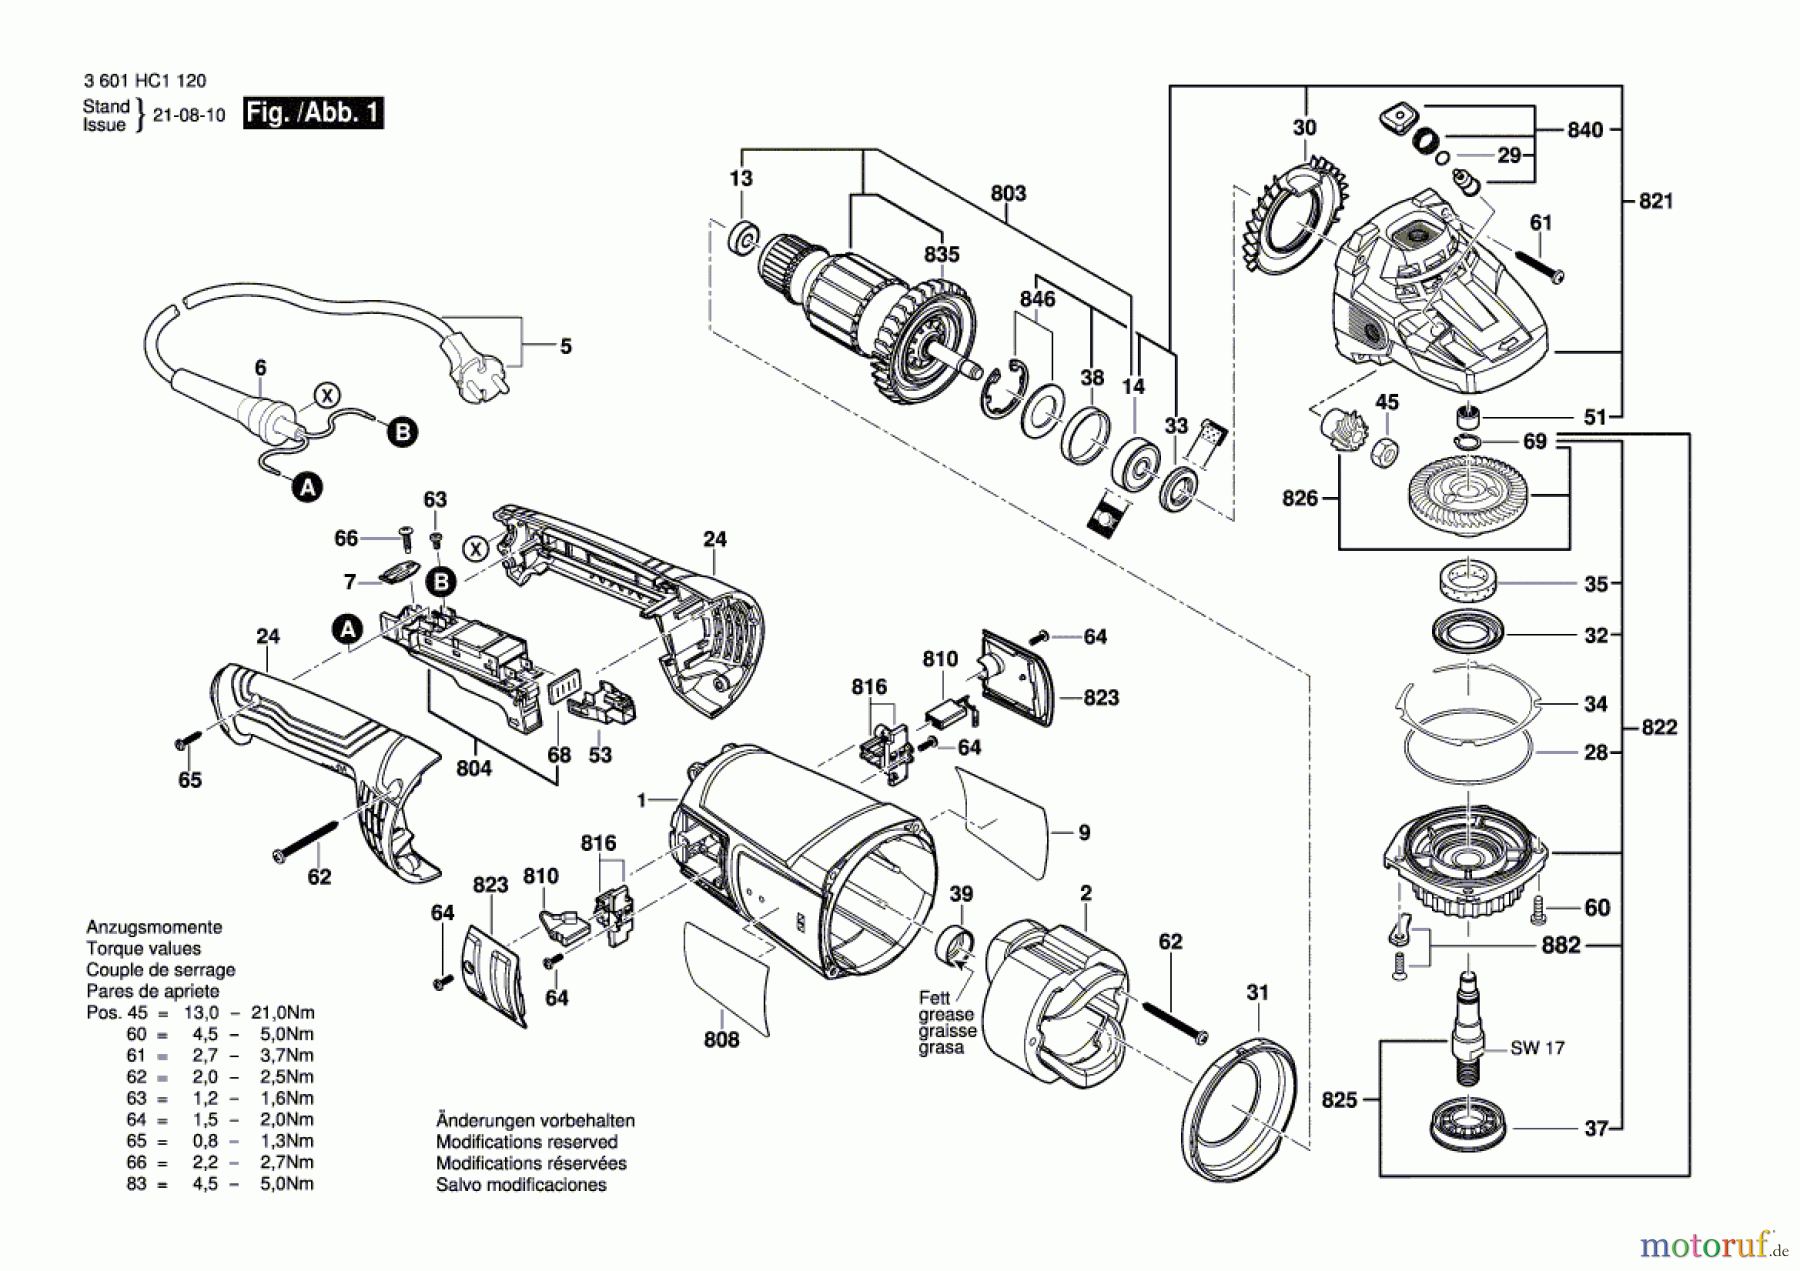  Bosch Werkzeug Winkelschleifer GWS 22-230 P Seite 1